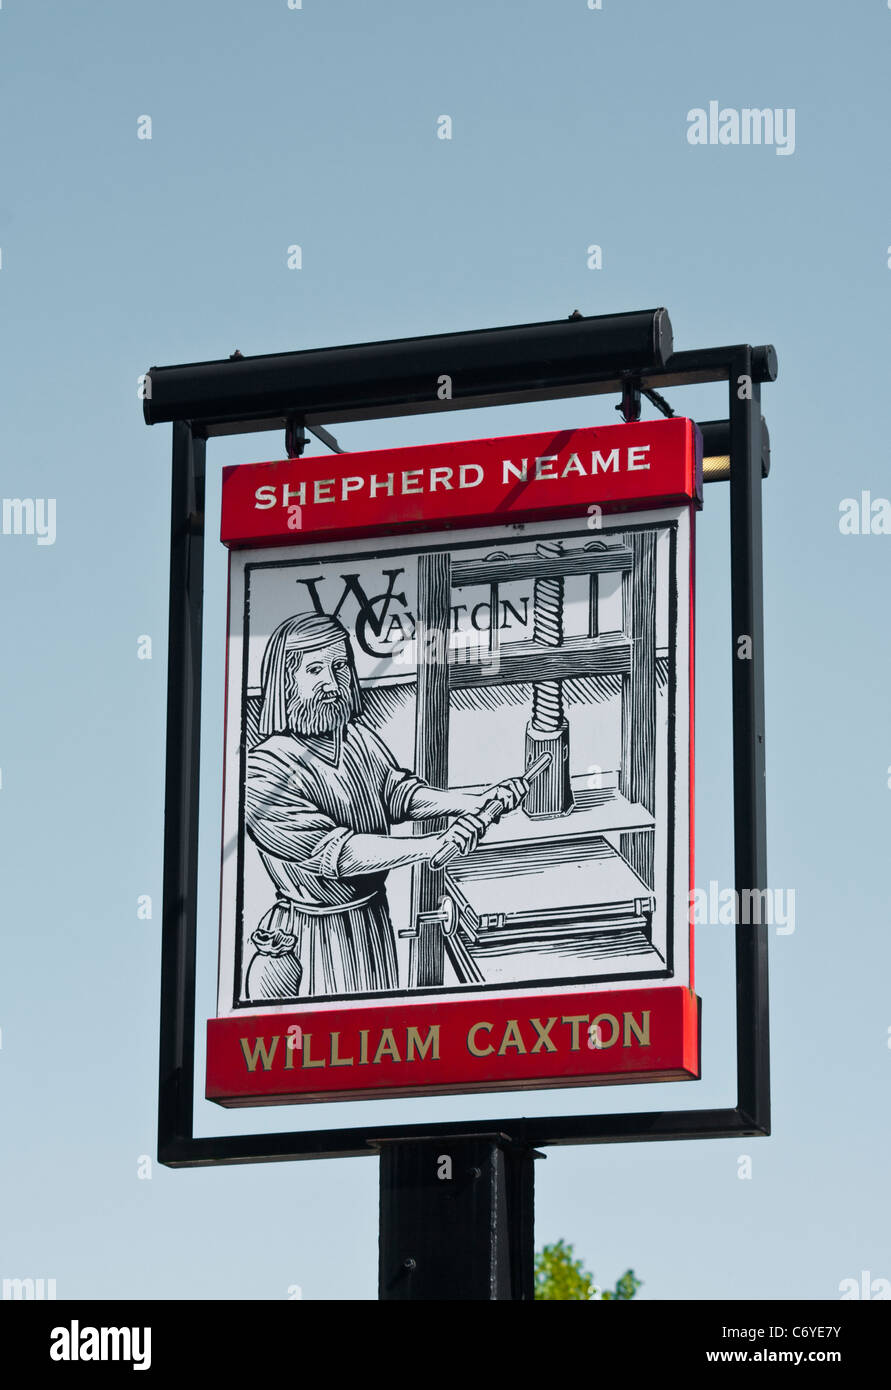 William Caxton Shepherd Neame Pub Schild UK Pubs Zeichen Stockfoto